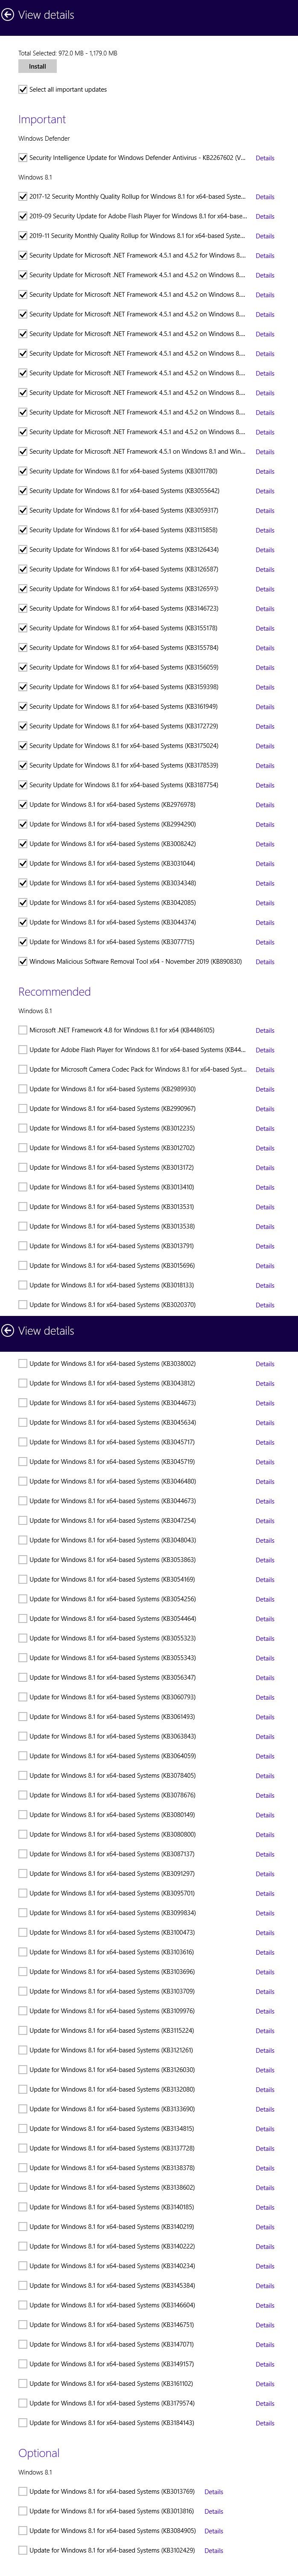 Windows 8.1 Details -- Full list.jpg